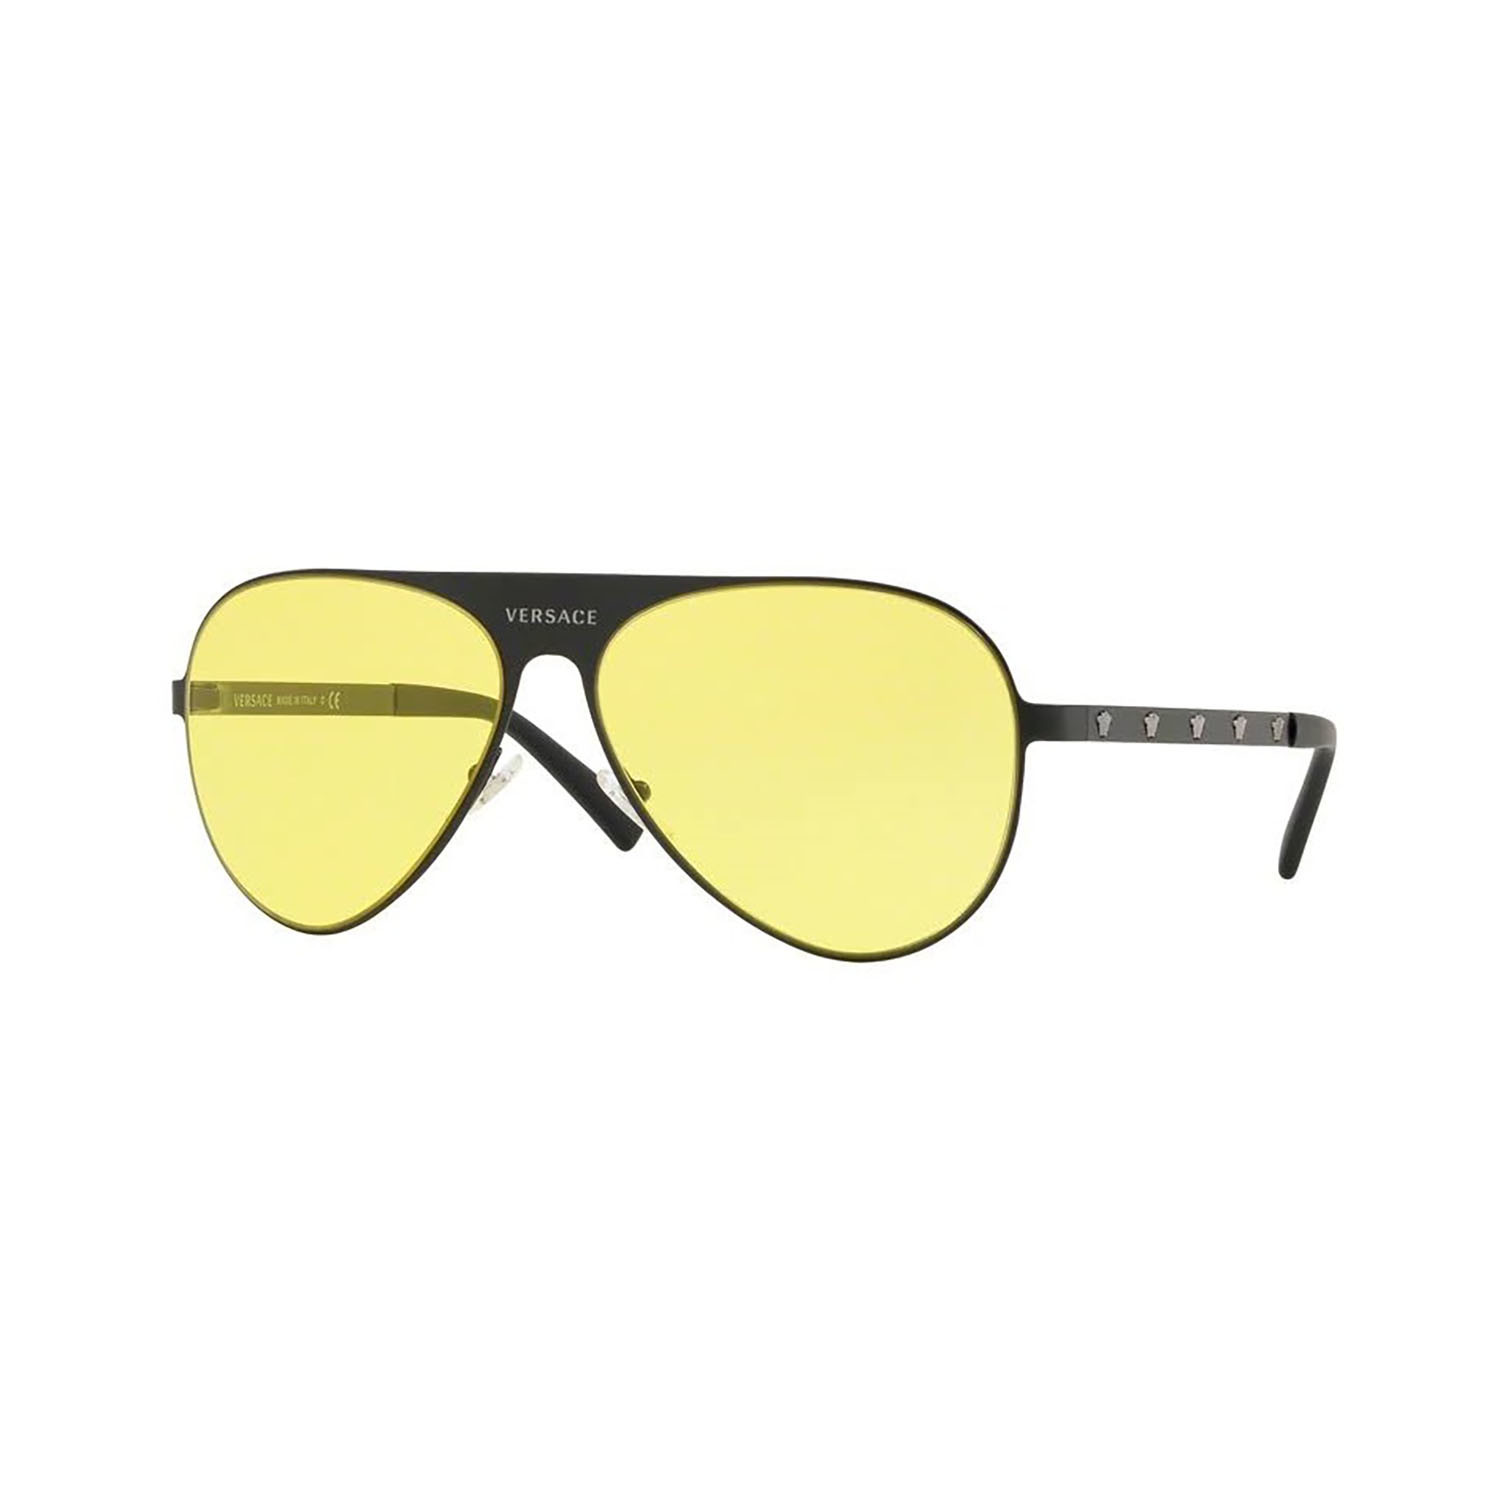 versace yellow sunglasses